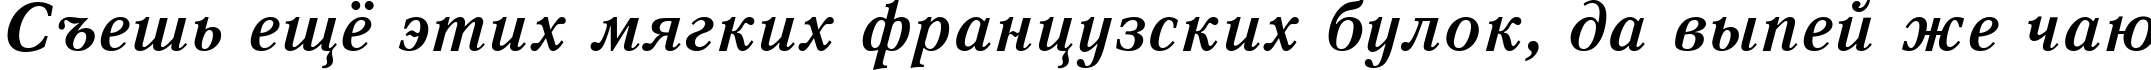 Пример написания шрифтом Quant Antiqua Bold Italic:001.001 текста на русском